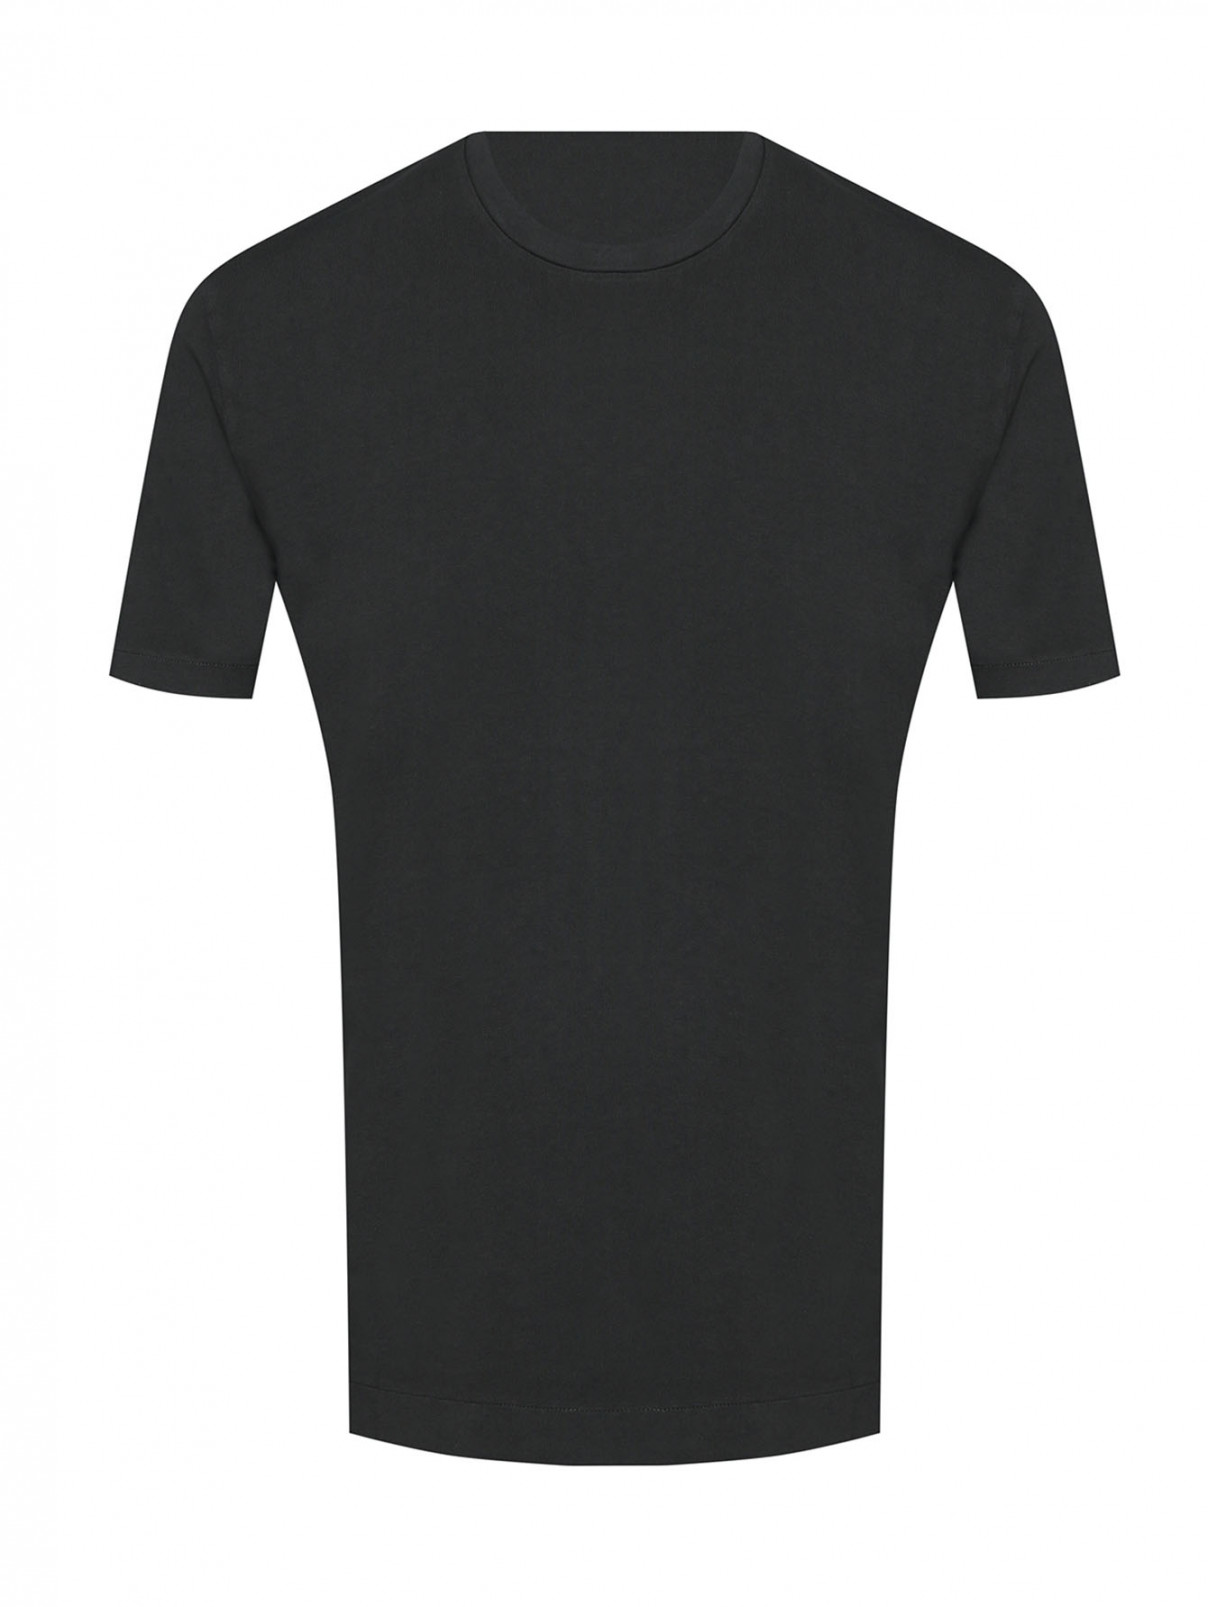 Однотонная футболка из хлопка Boglioli  –  Общий вид  – Цвет:  Черный